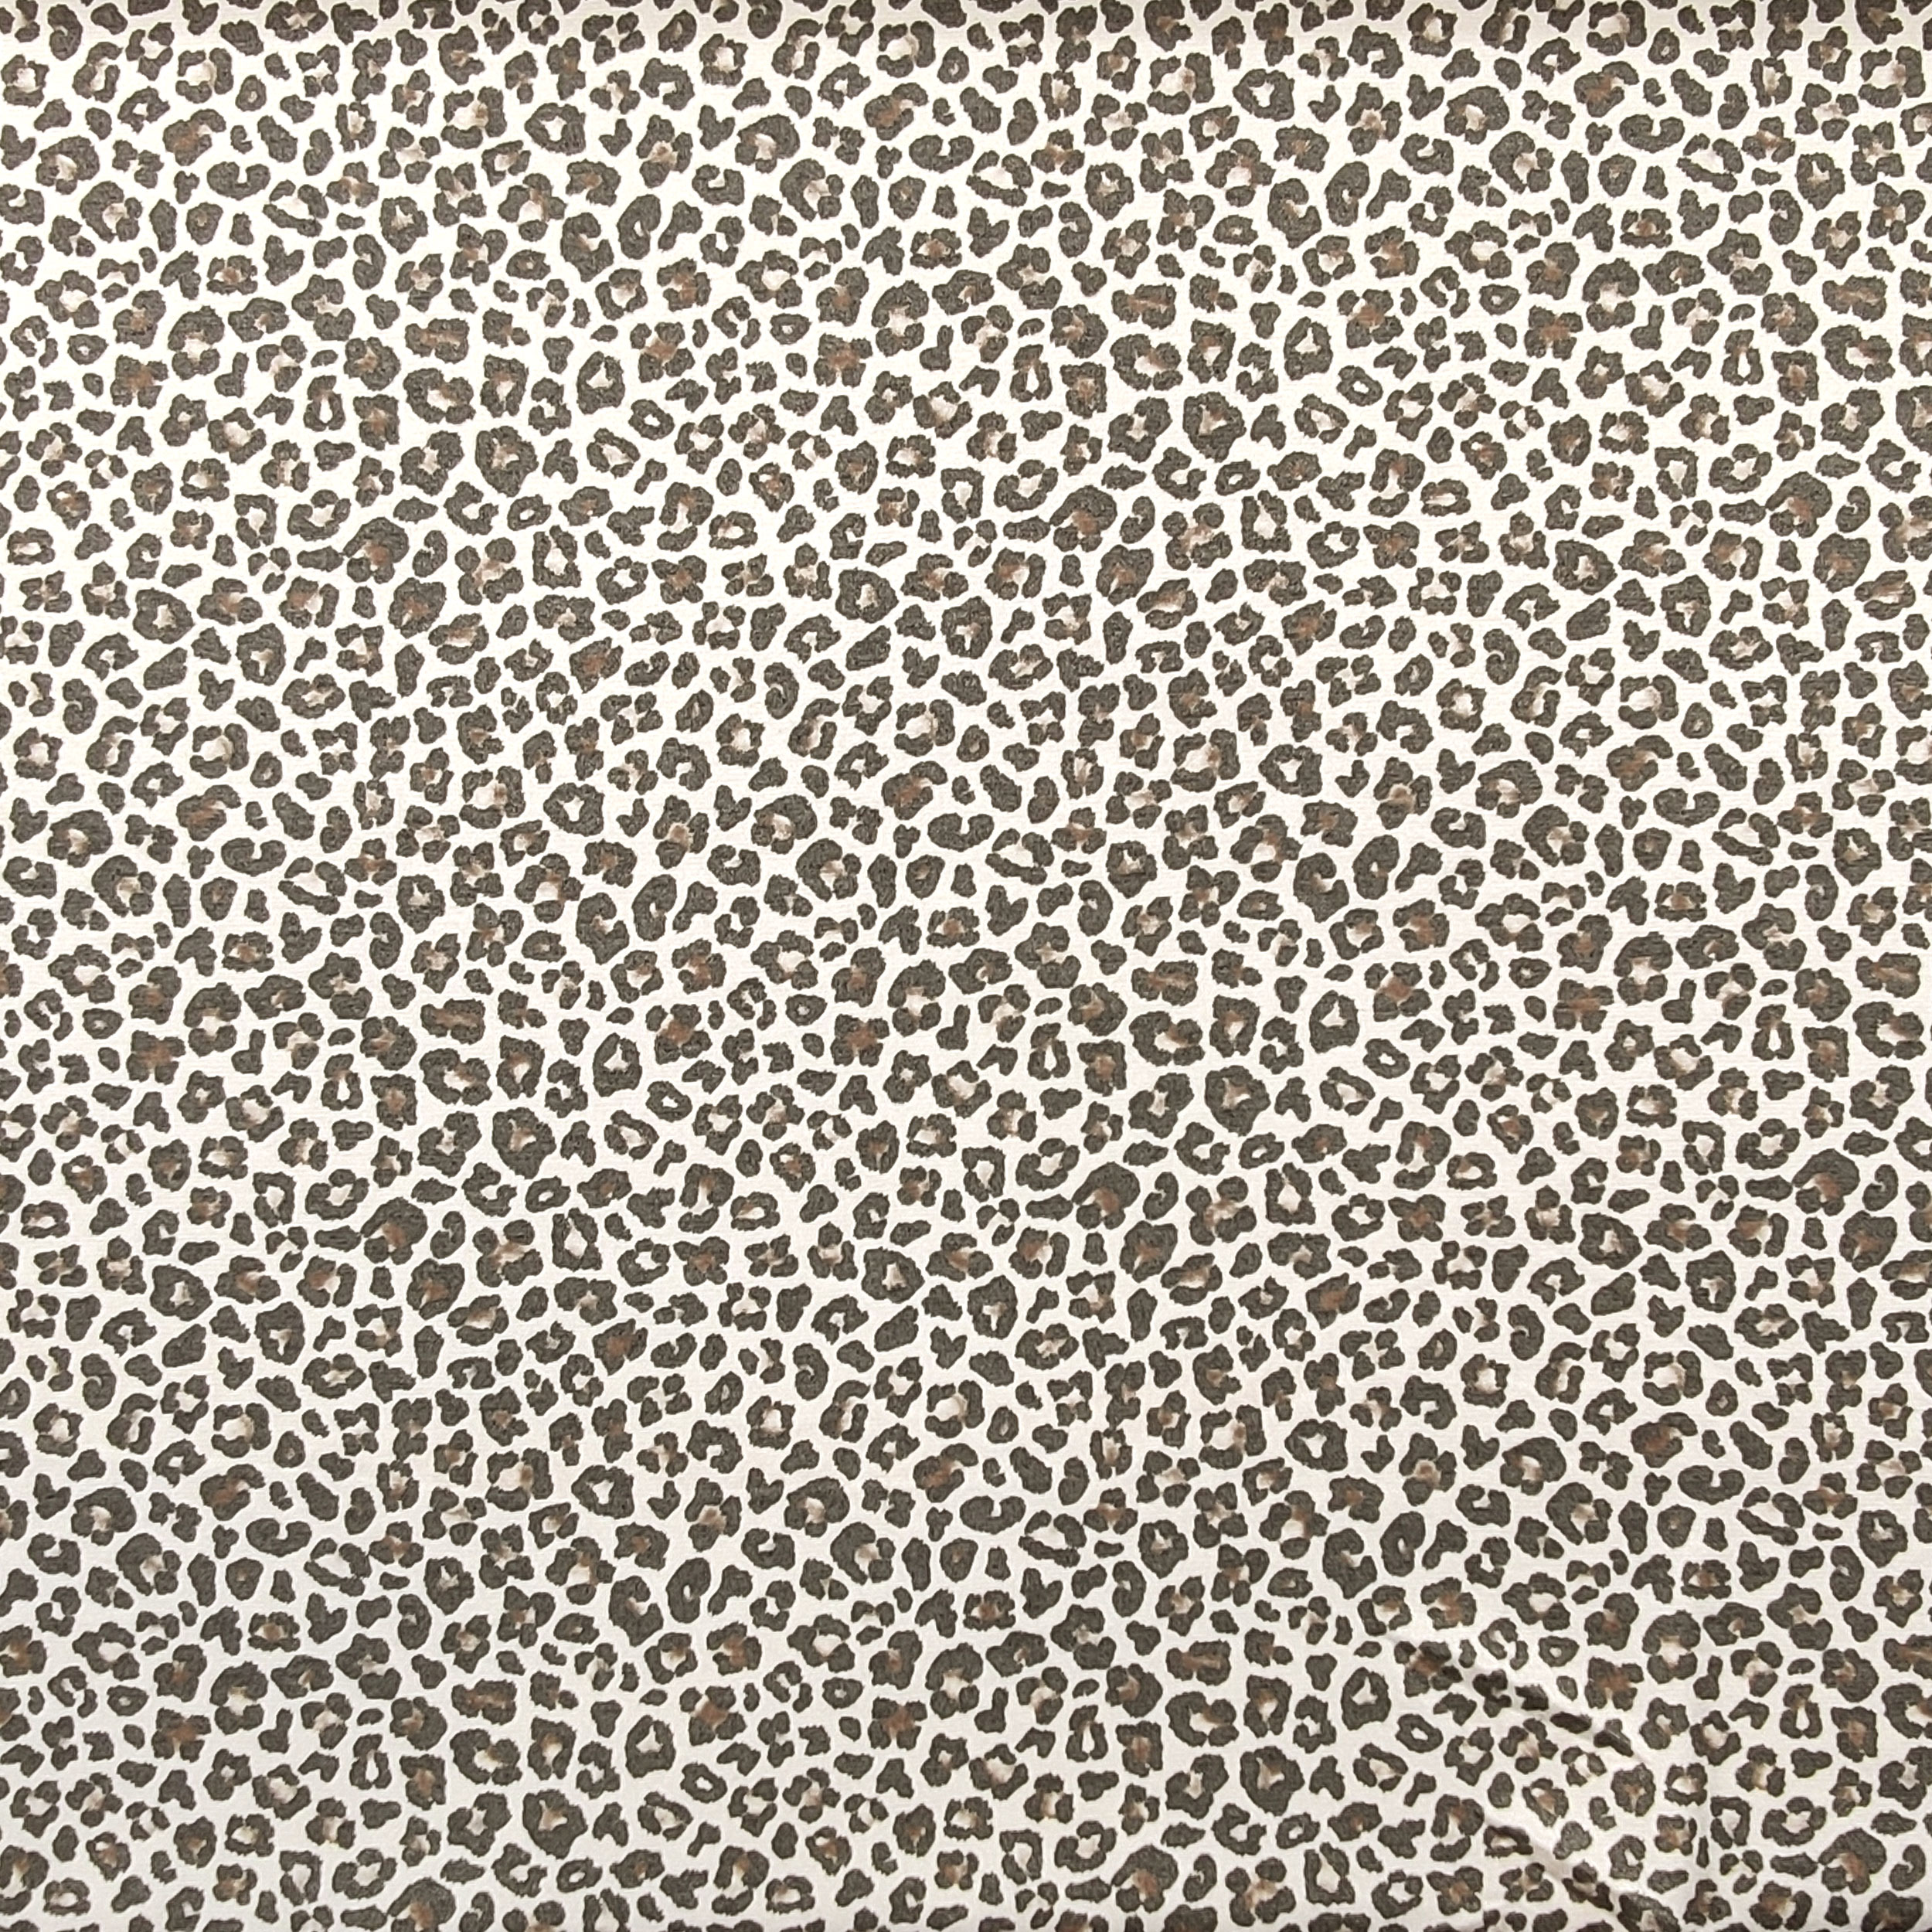 maglina mano cachemire leopardata